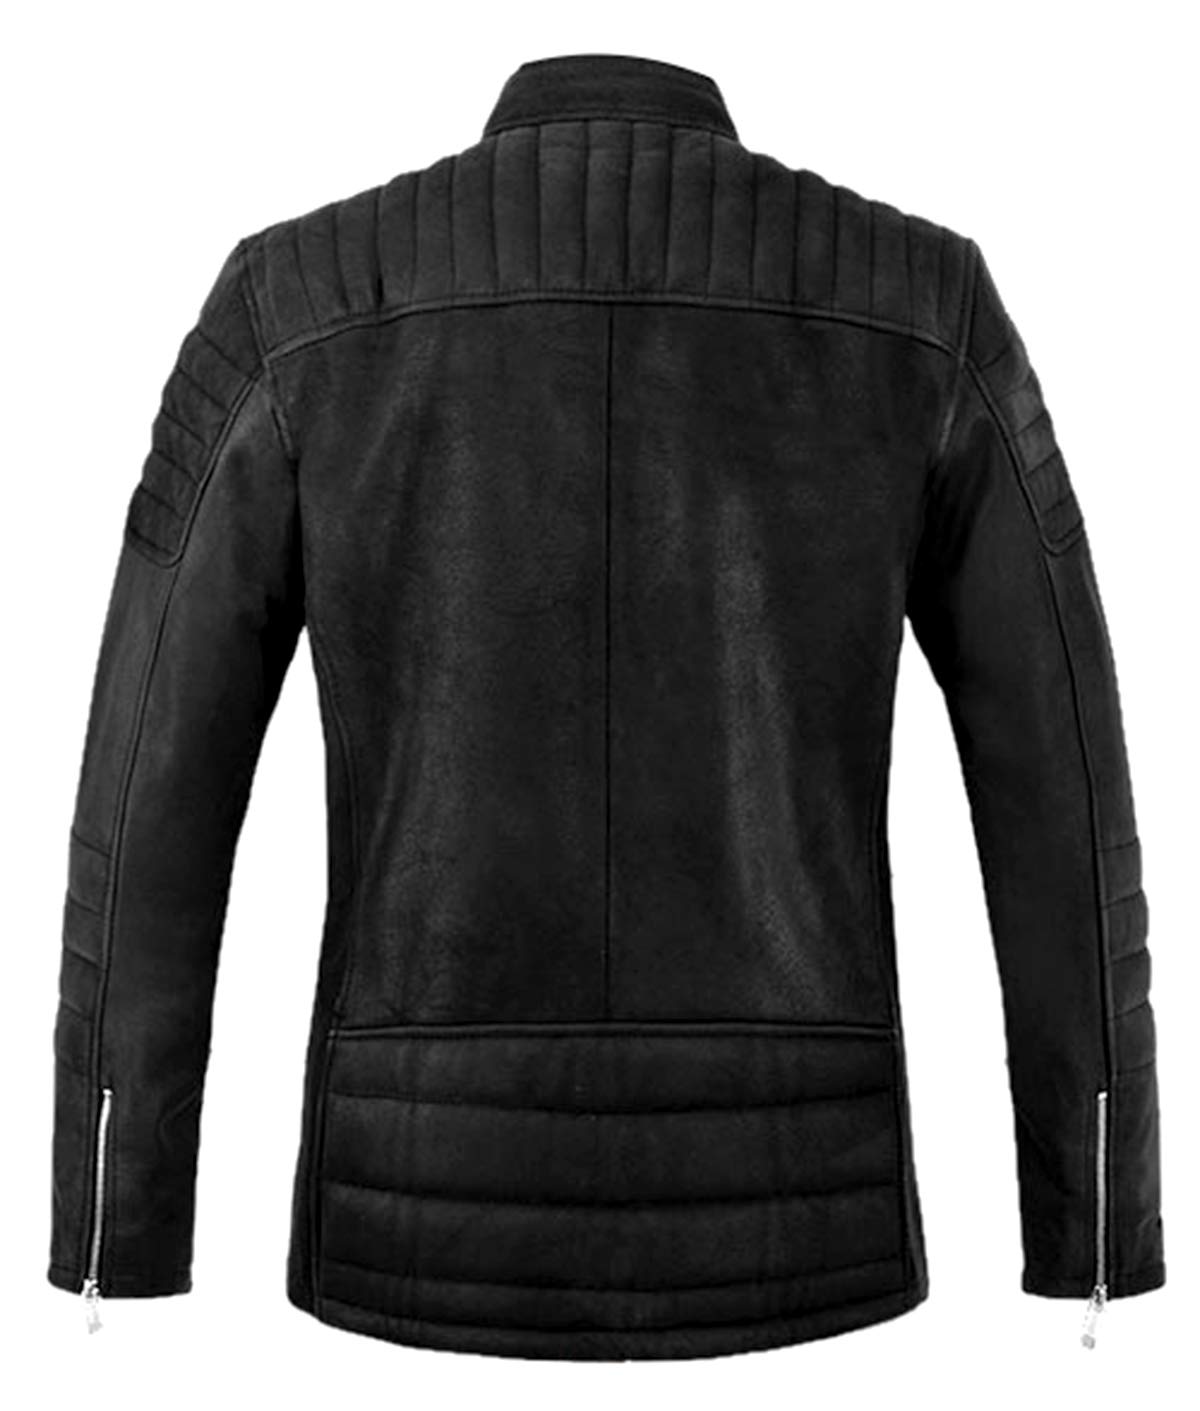 Spazeup Leather Biker Jacket Men - Biker Leather Jacket Men - Lambskin Leather Jacket Men